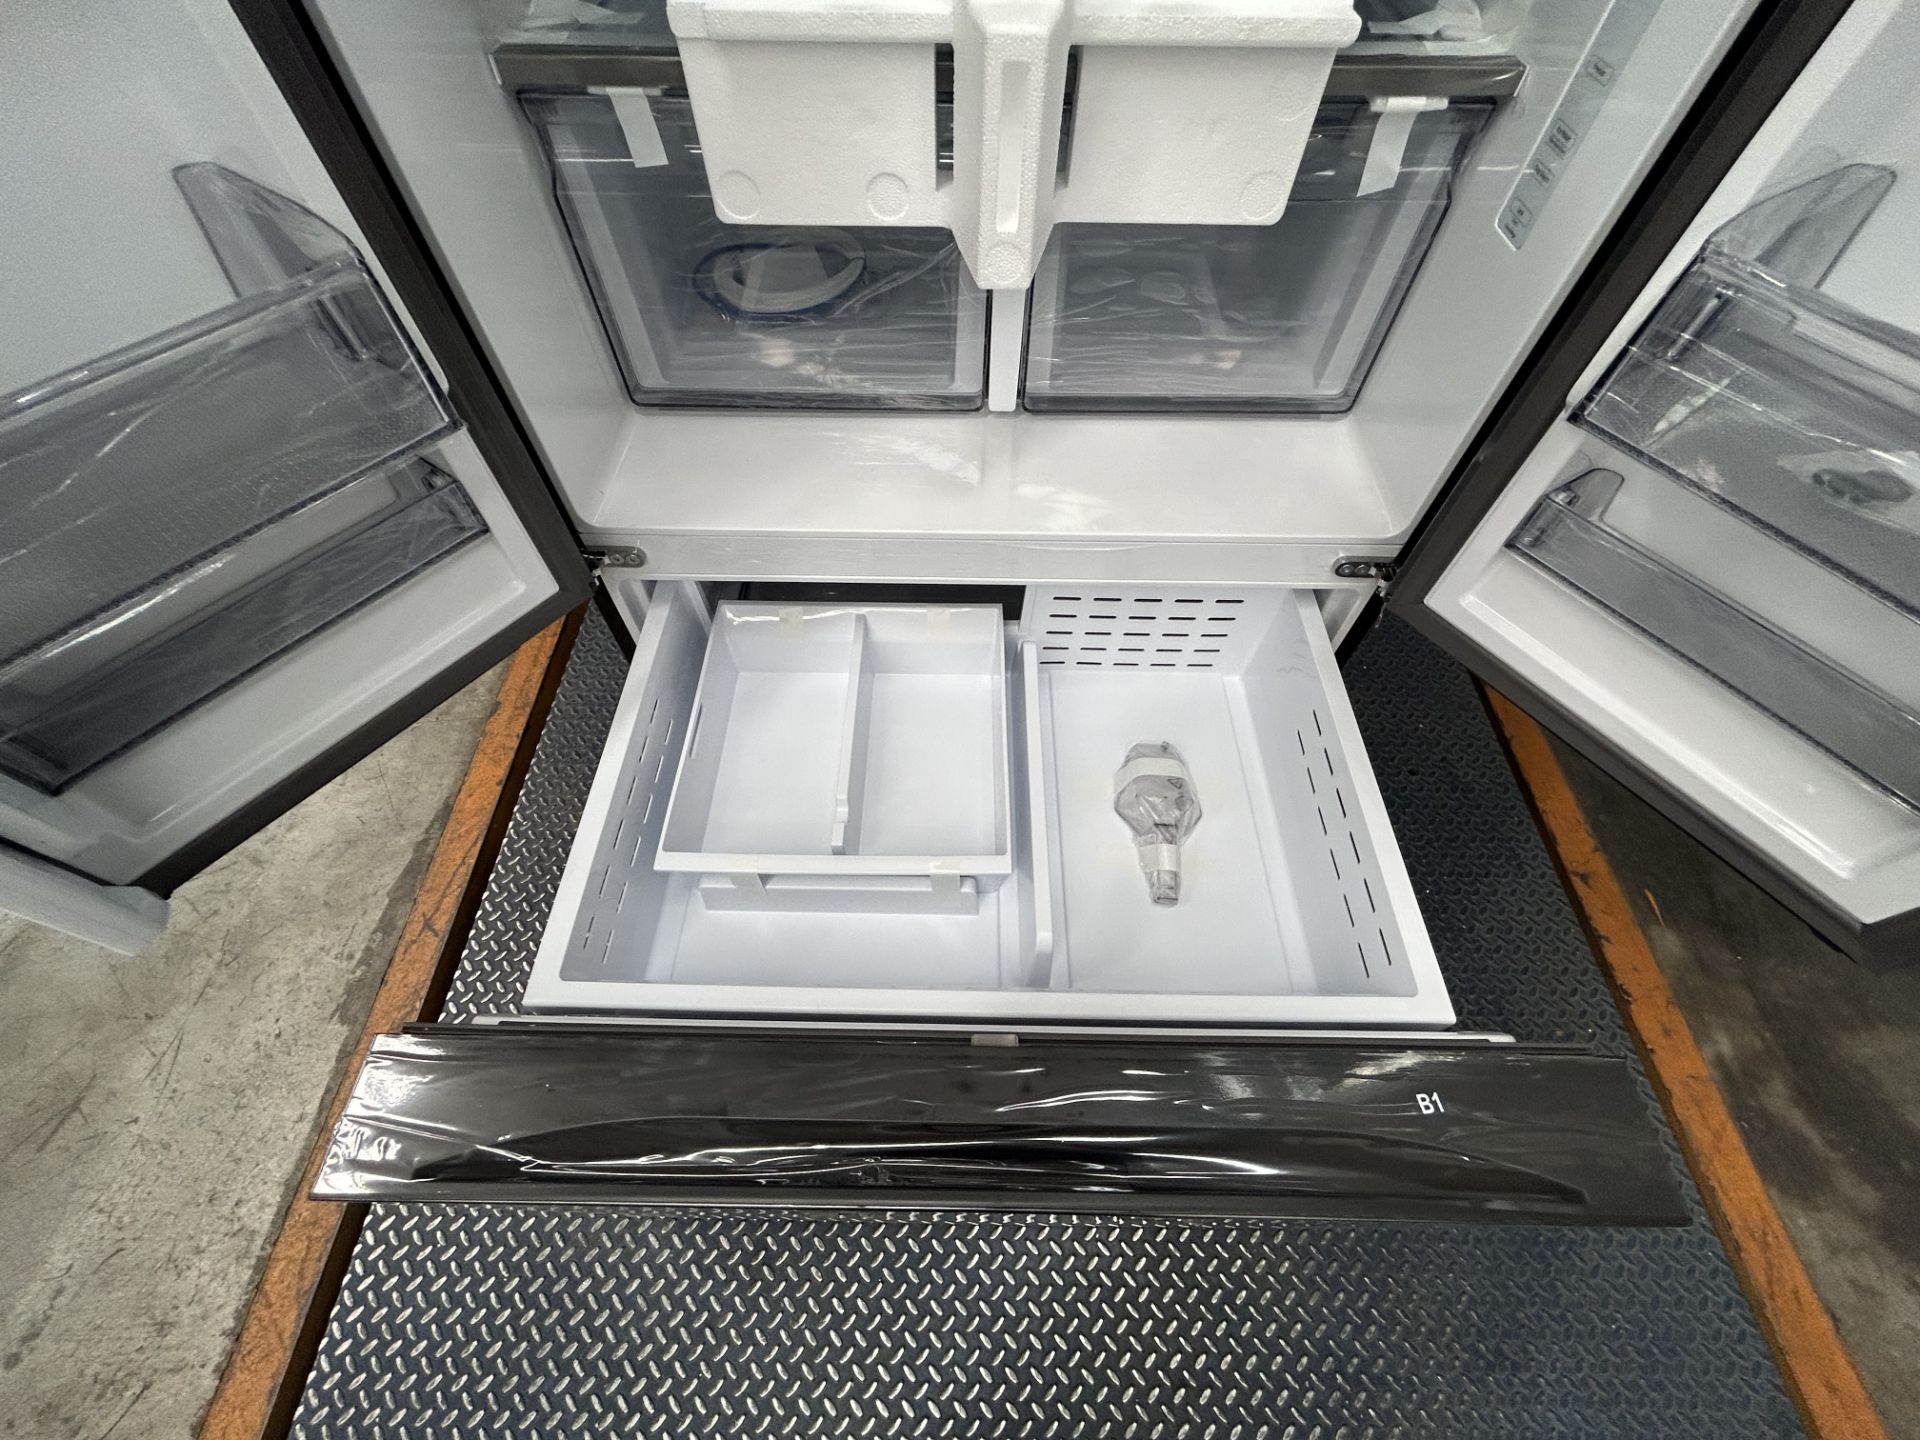 (NUEVO) Lote de 1 Refrigerador Marca SAMSUNG, Modelo RF32CG5N10B1, Serie 00968T, Color GRIS. - Image 5 of 6